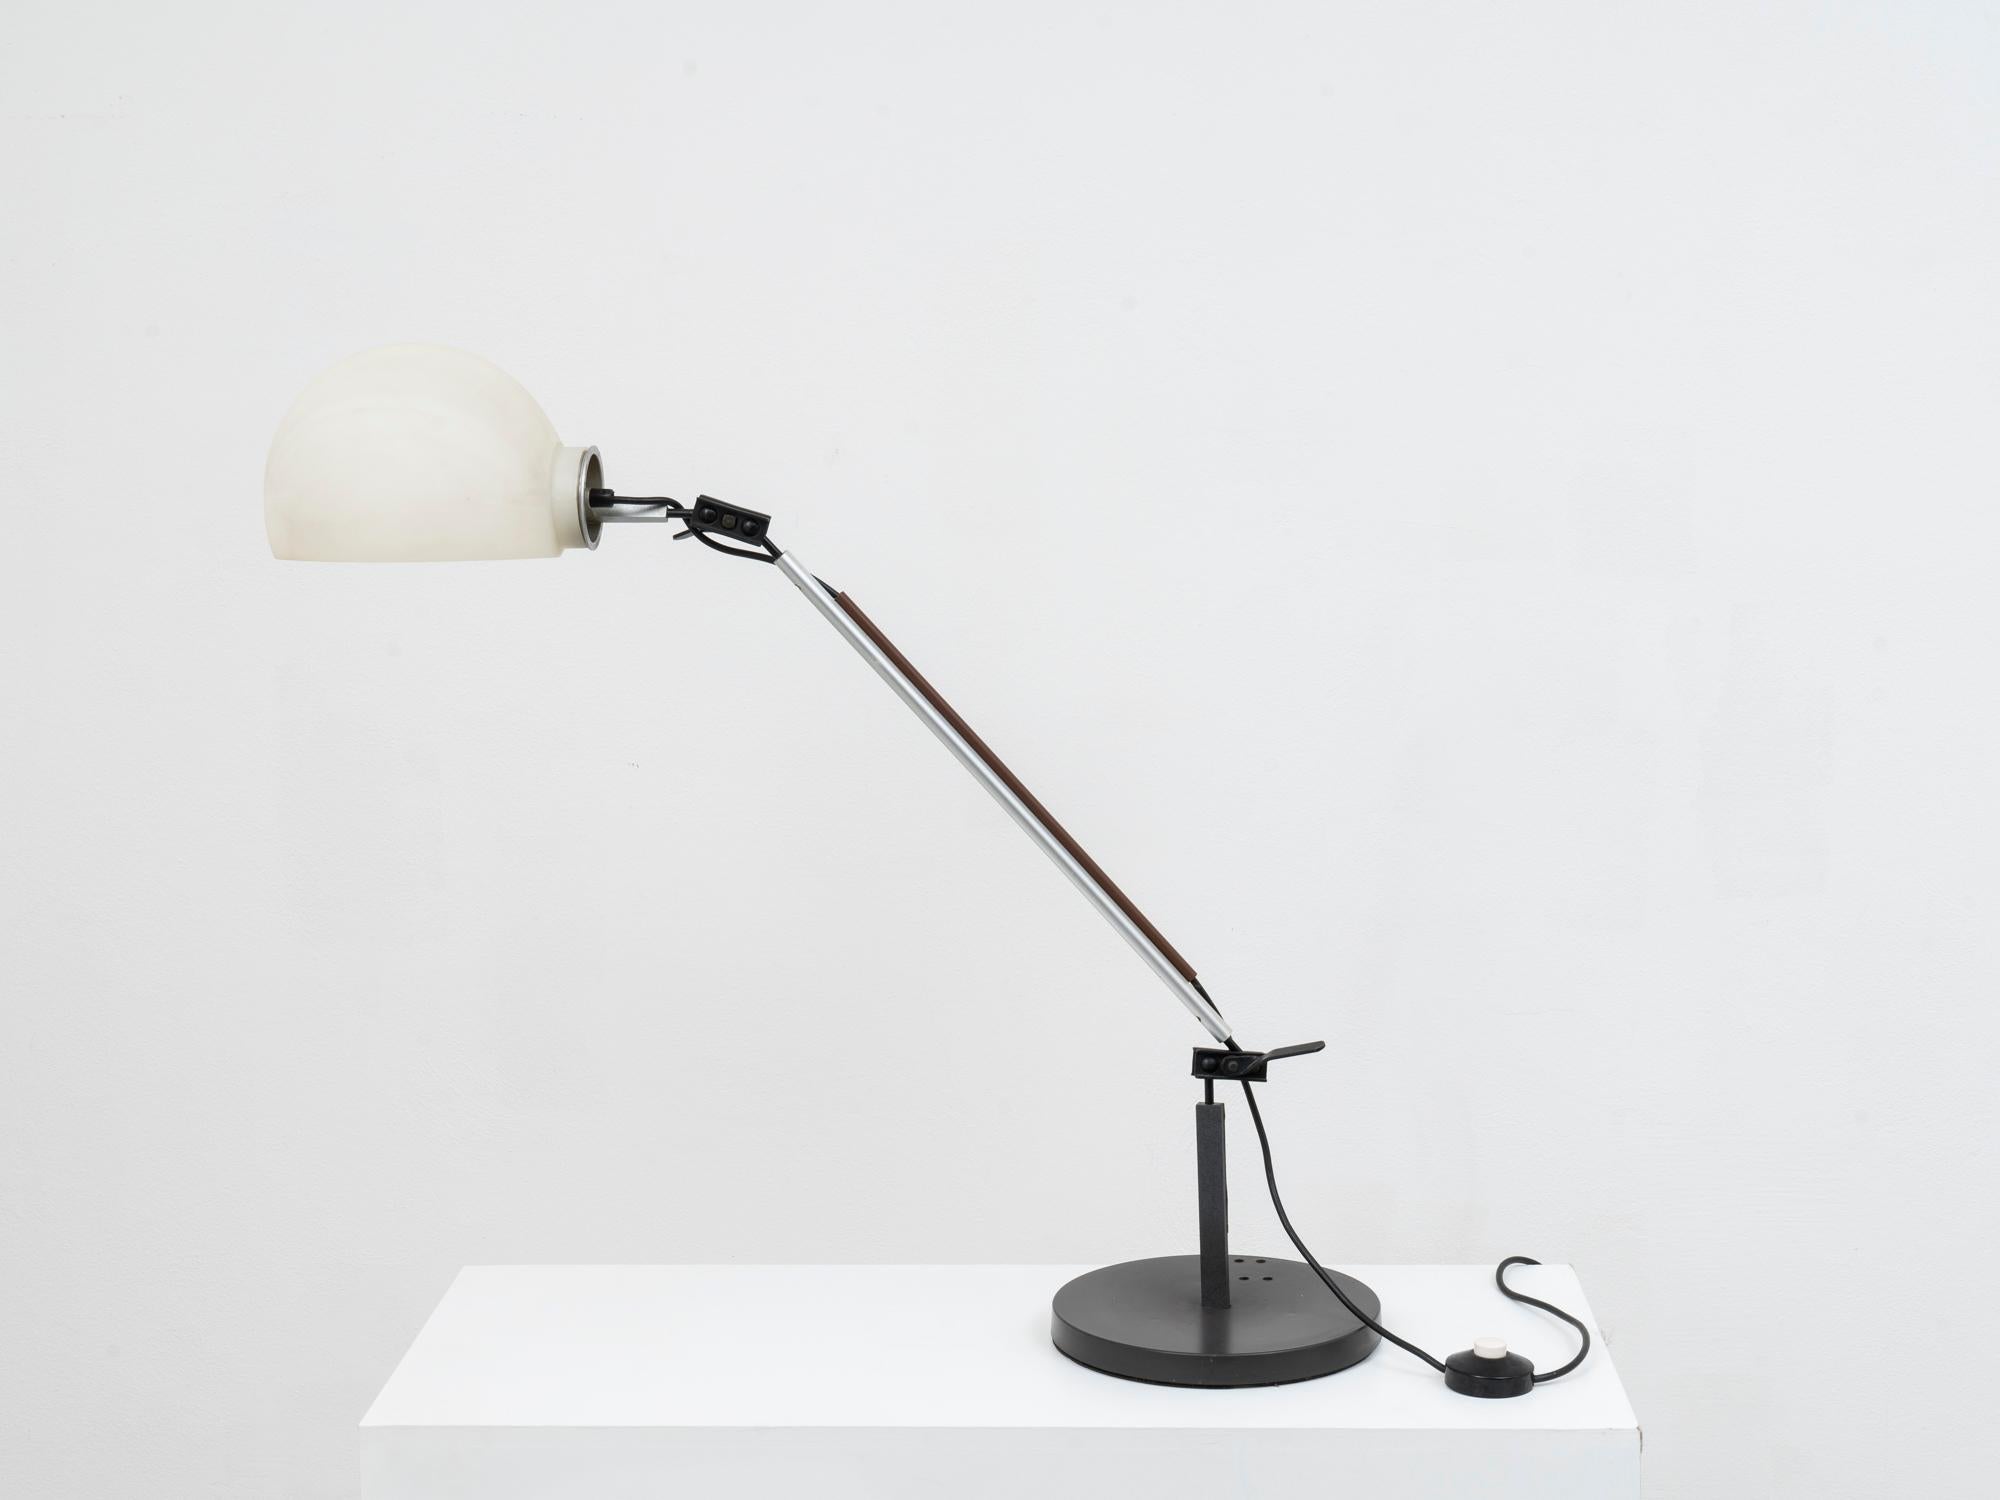 Cette lampe de bureau a été éditée pour la première fois par Artemide en 1976, dans le cadre du système combinable créé par les designers italiens Enzo Mari et Giancarlo Fassina. Ce système était composé d'éléments modulaires pouvant être librement